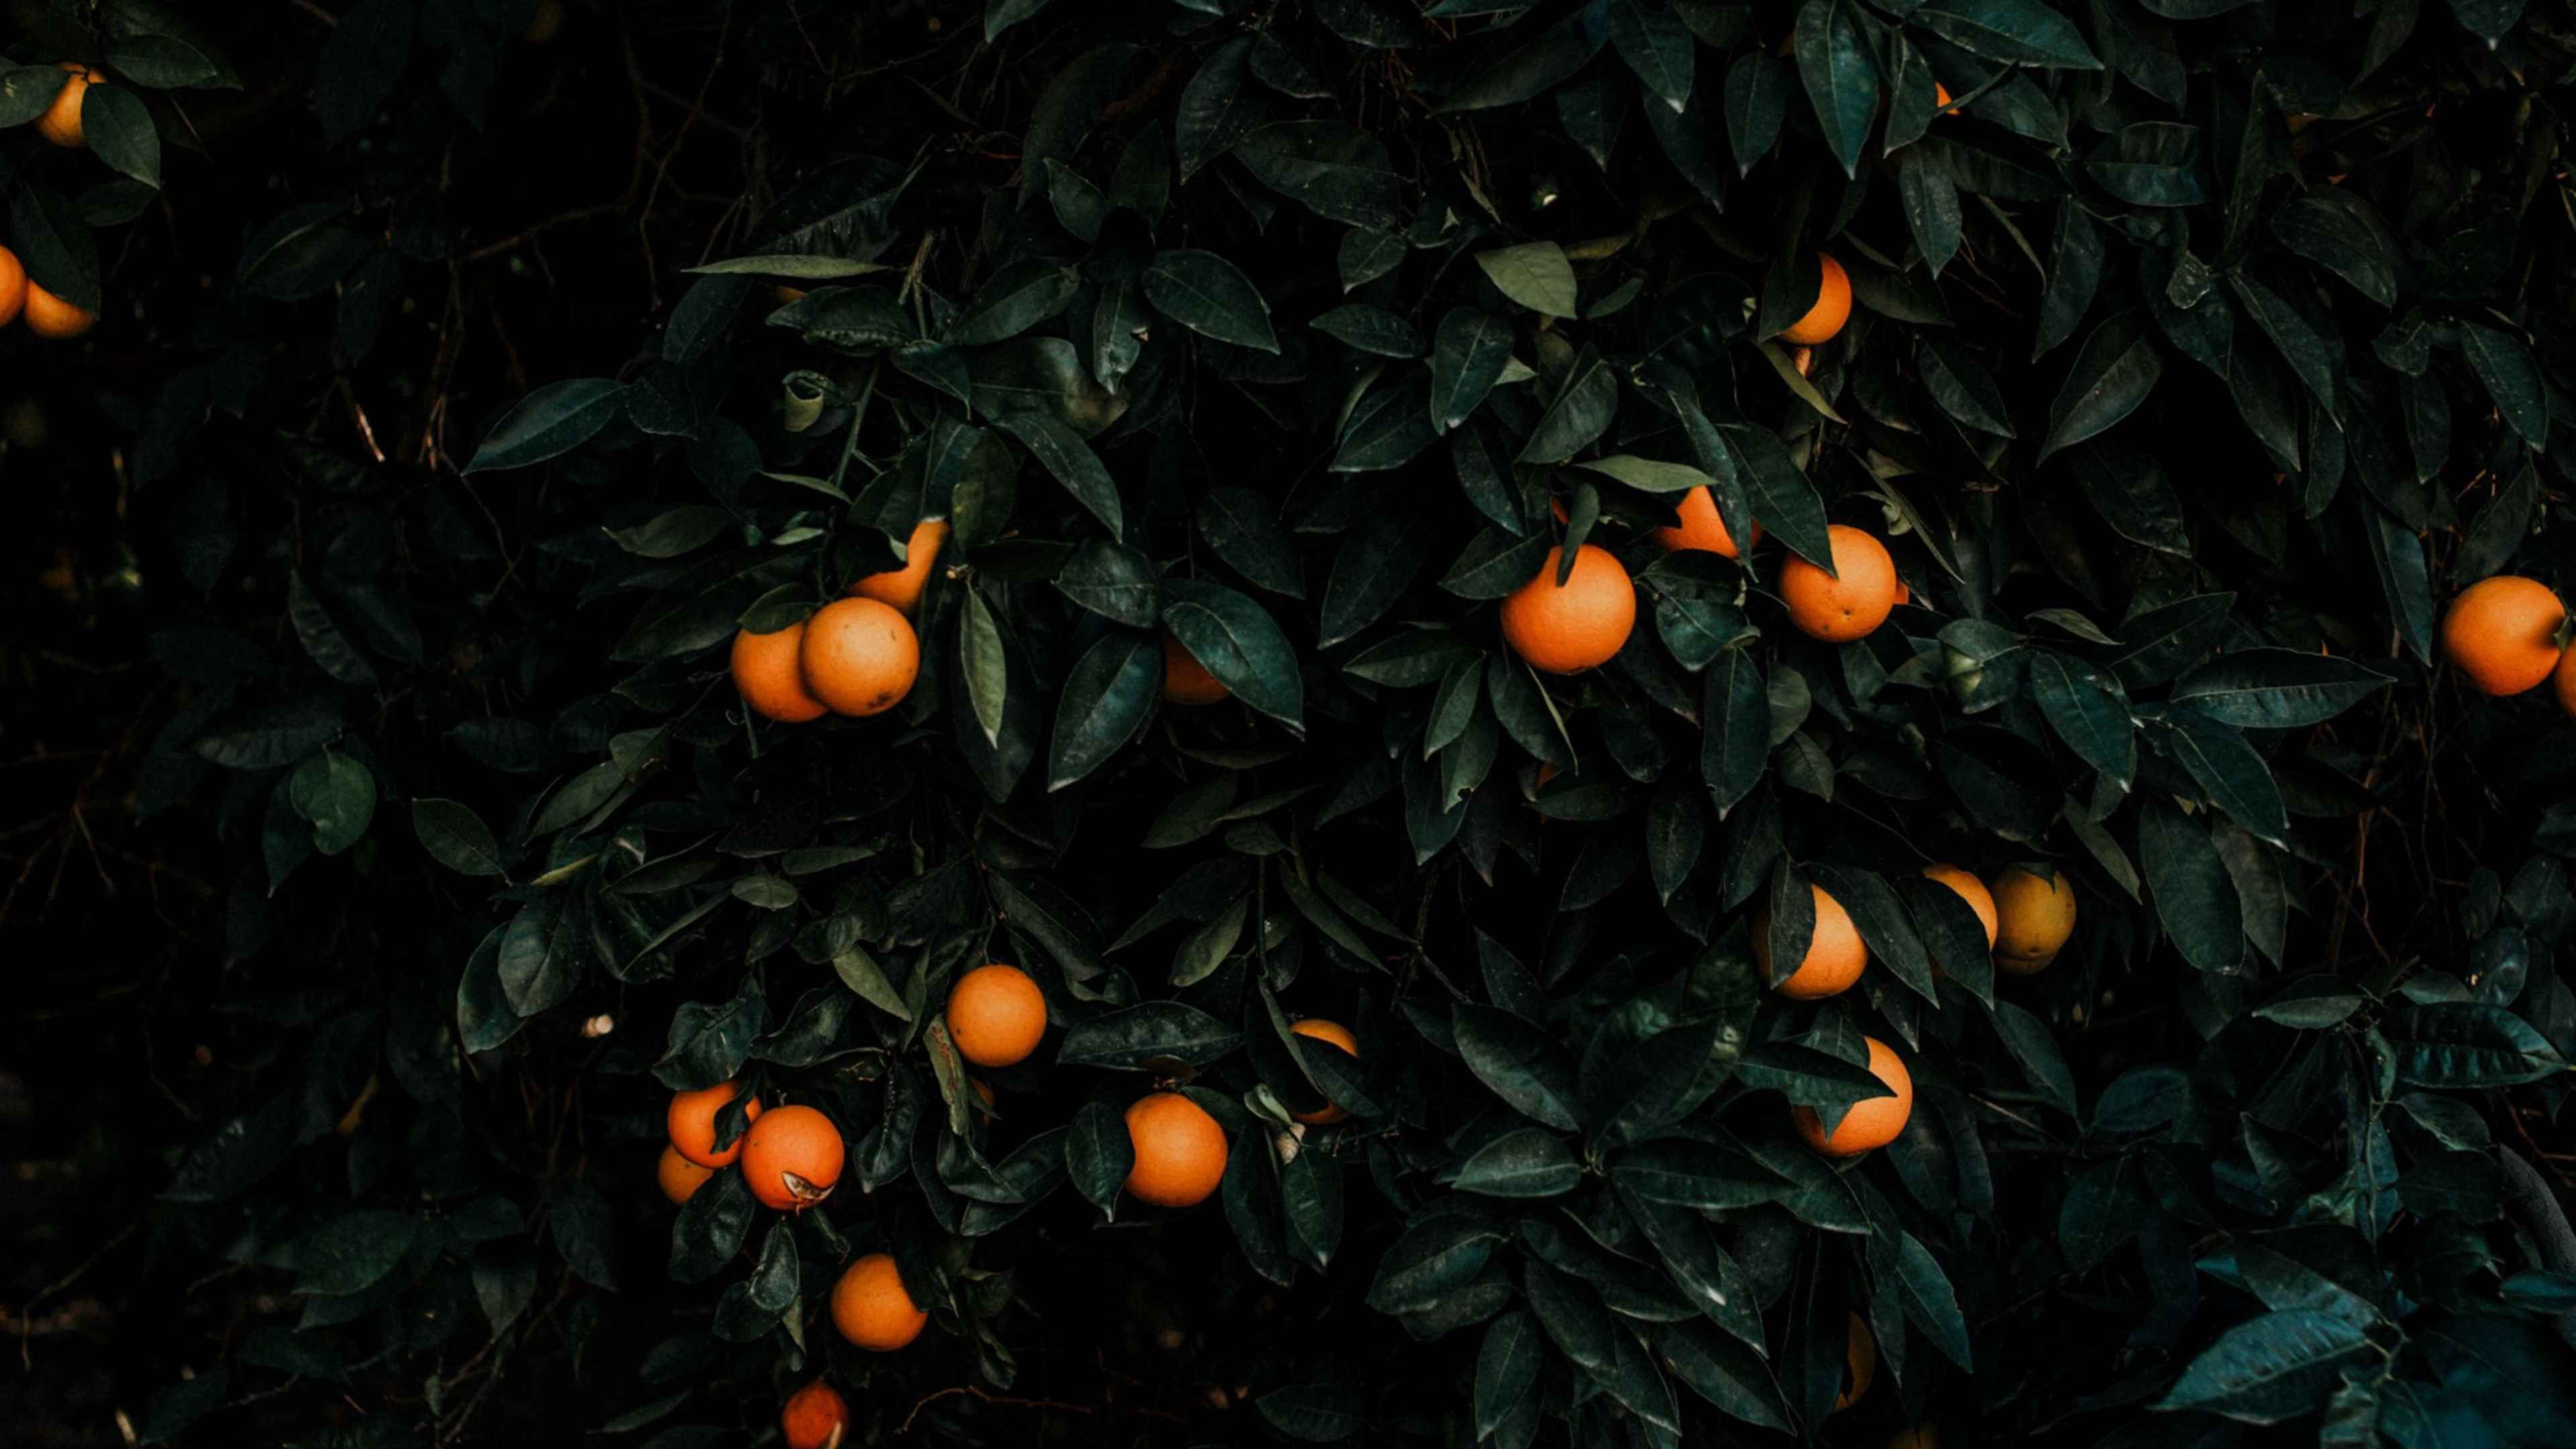 Заставка на телефон апельсины